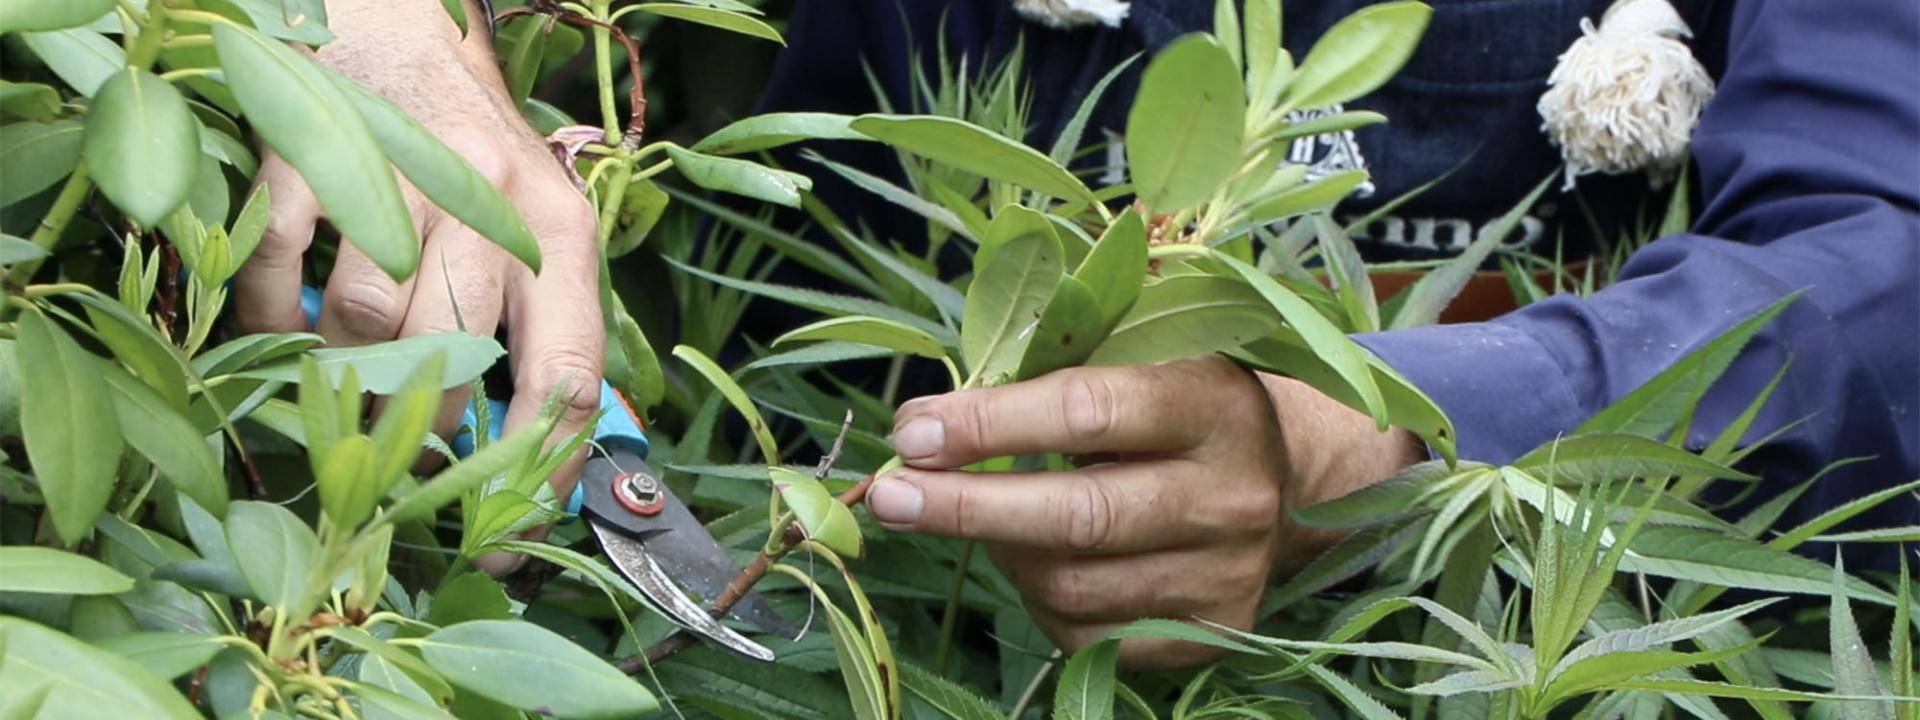 Rhododendren schneiden: Wann und wie?